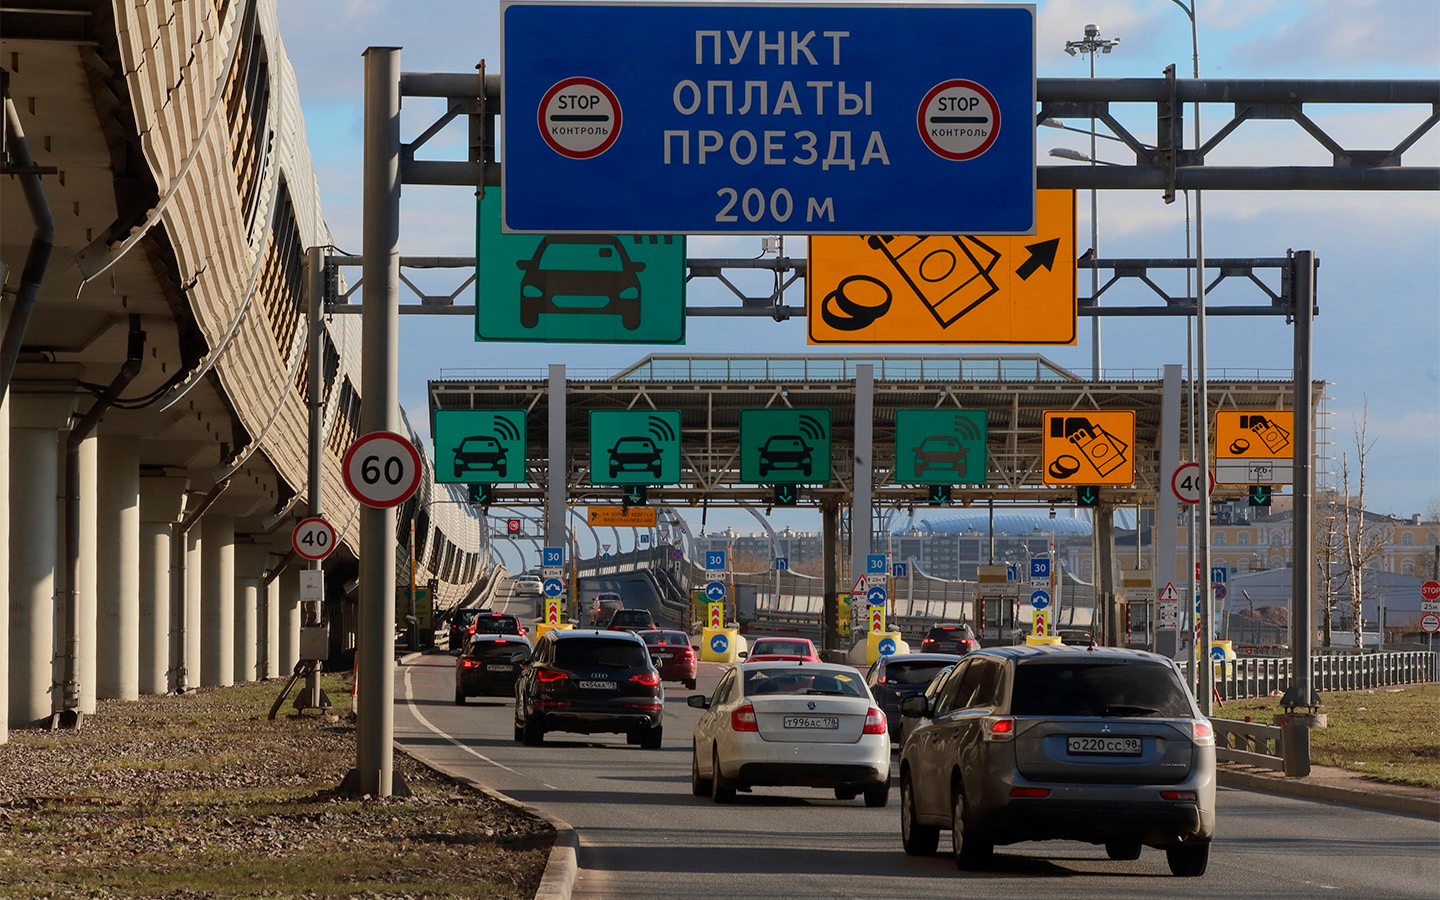 Езда по транспондеру zsd разрешена на трассе М11 между Санкт-Петербургом и Москвой